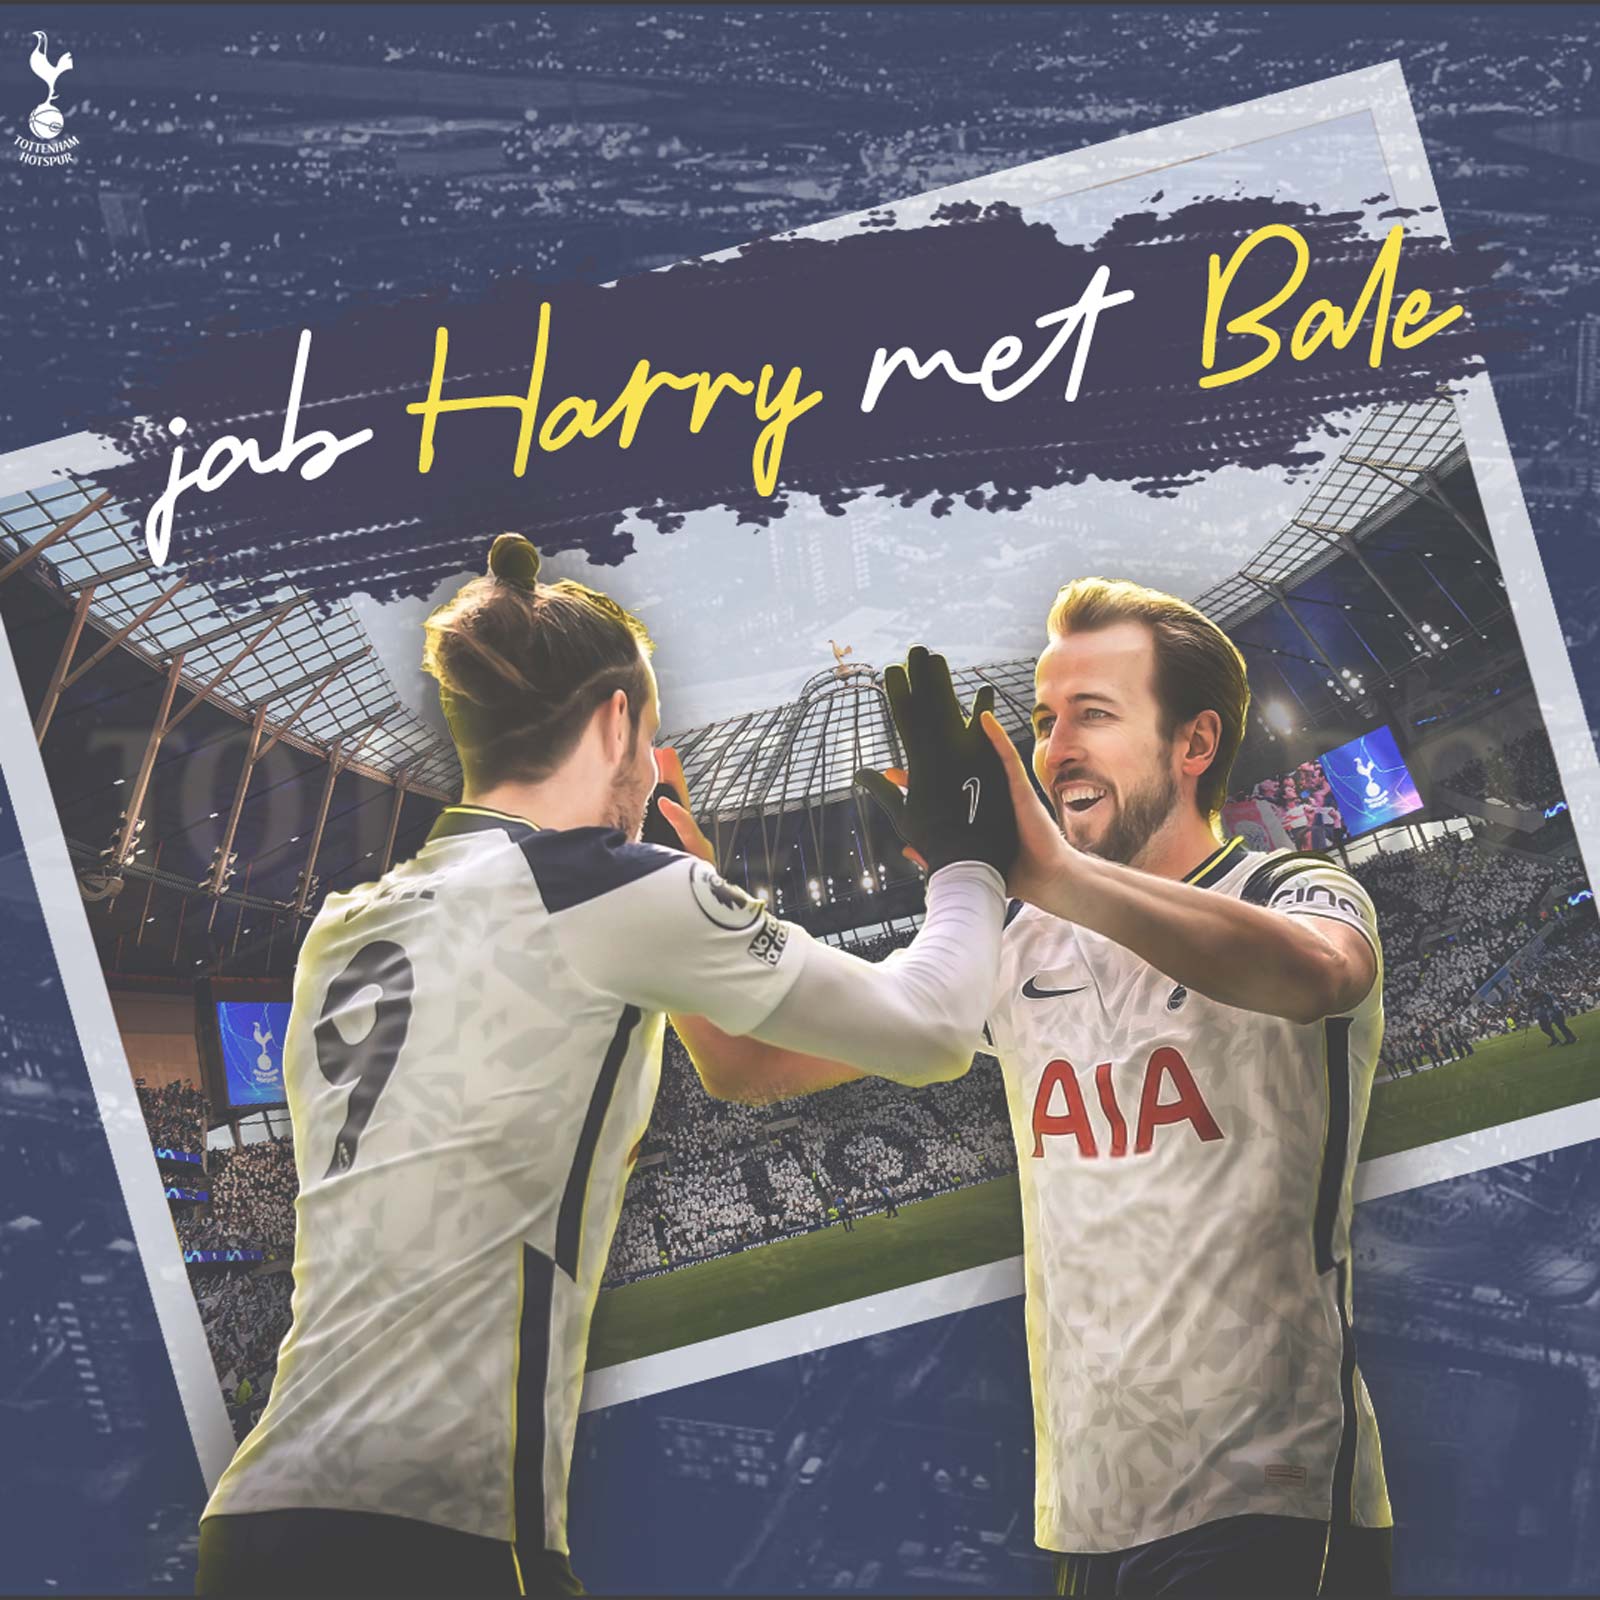 Gareth Bale - “Quý nhân” thời loạn lạc của Jose Mourinho - 16